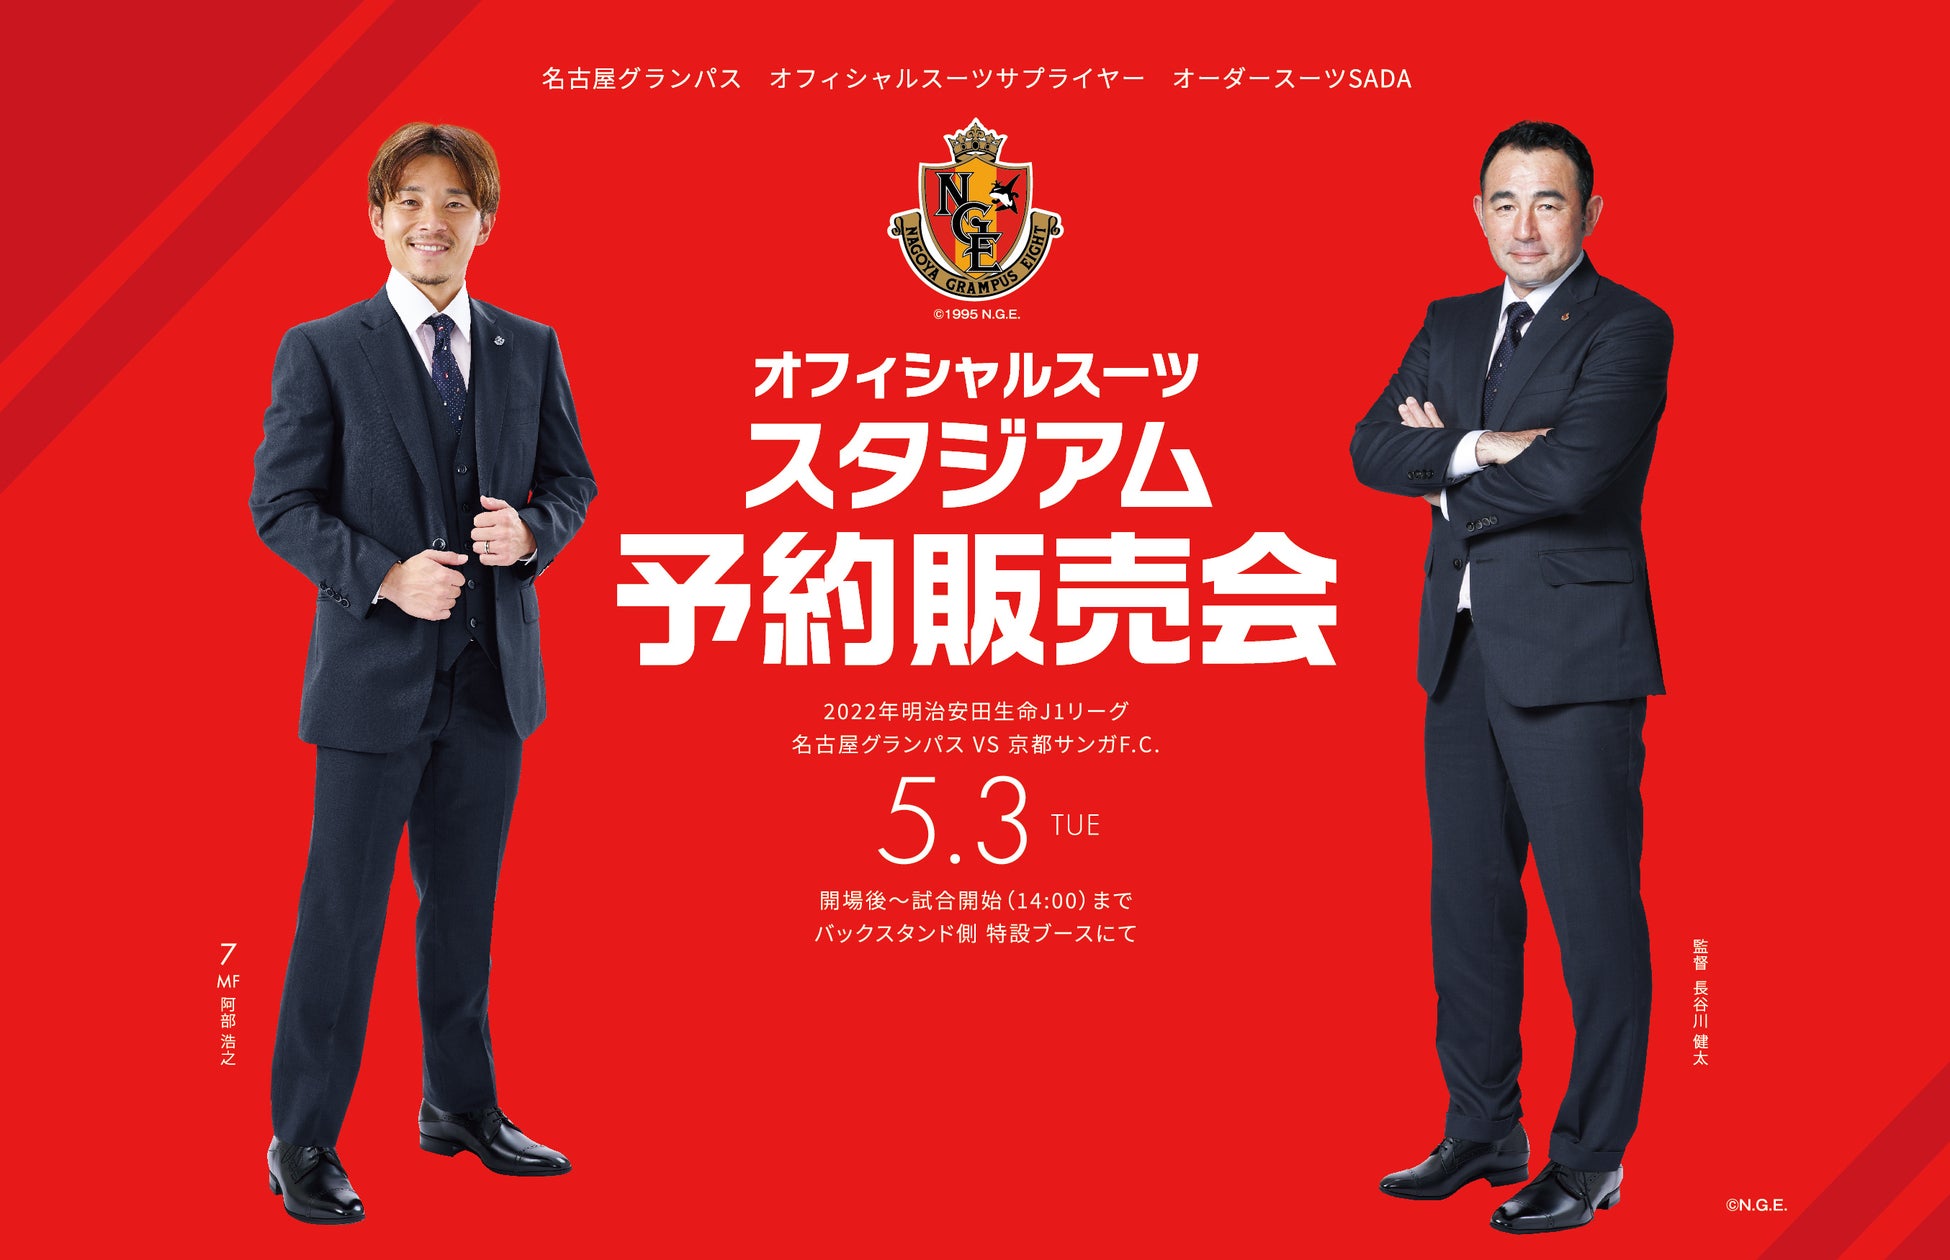 「ガンバ大阪」オーダースーツSADAパートナーデー 5月4日(水)開催！オフィシャルスーツ予約販売会＆ガラガラ抽選会をおこないます。